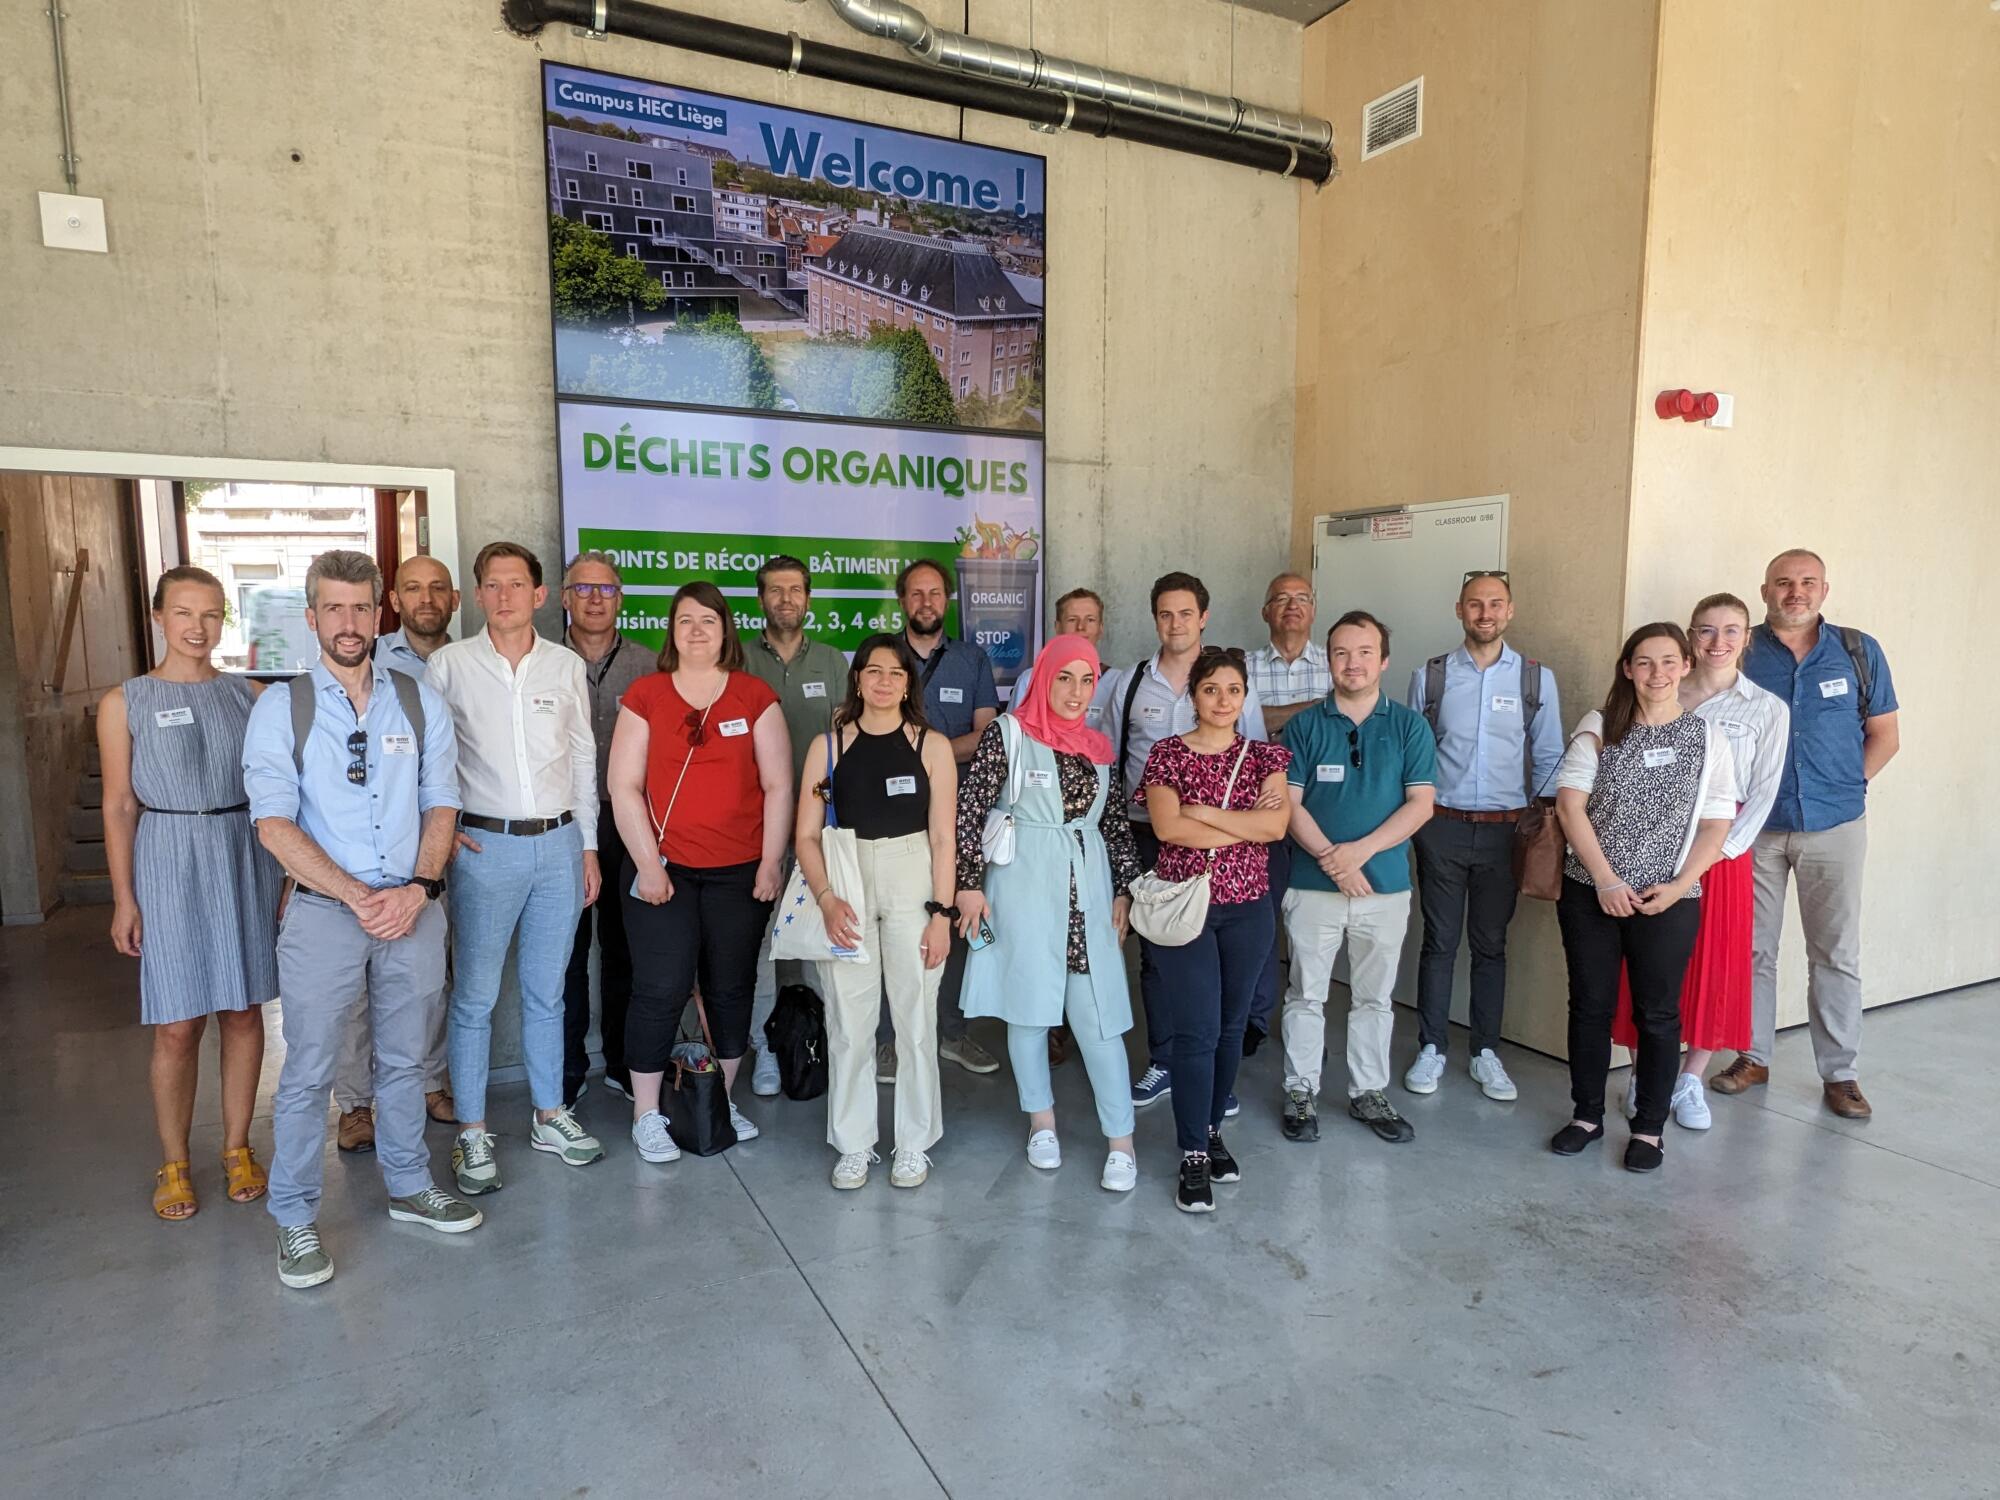 Last EMR Connect workshop explores public transport in the Euregio